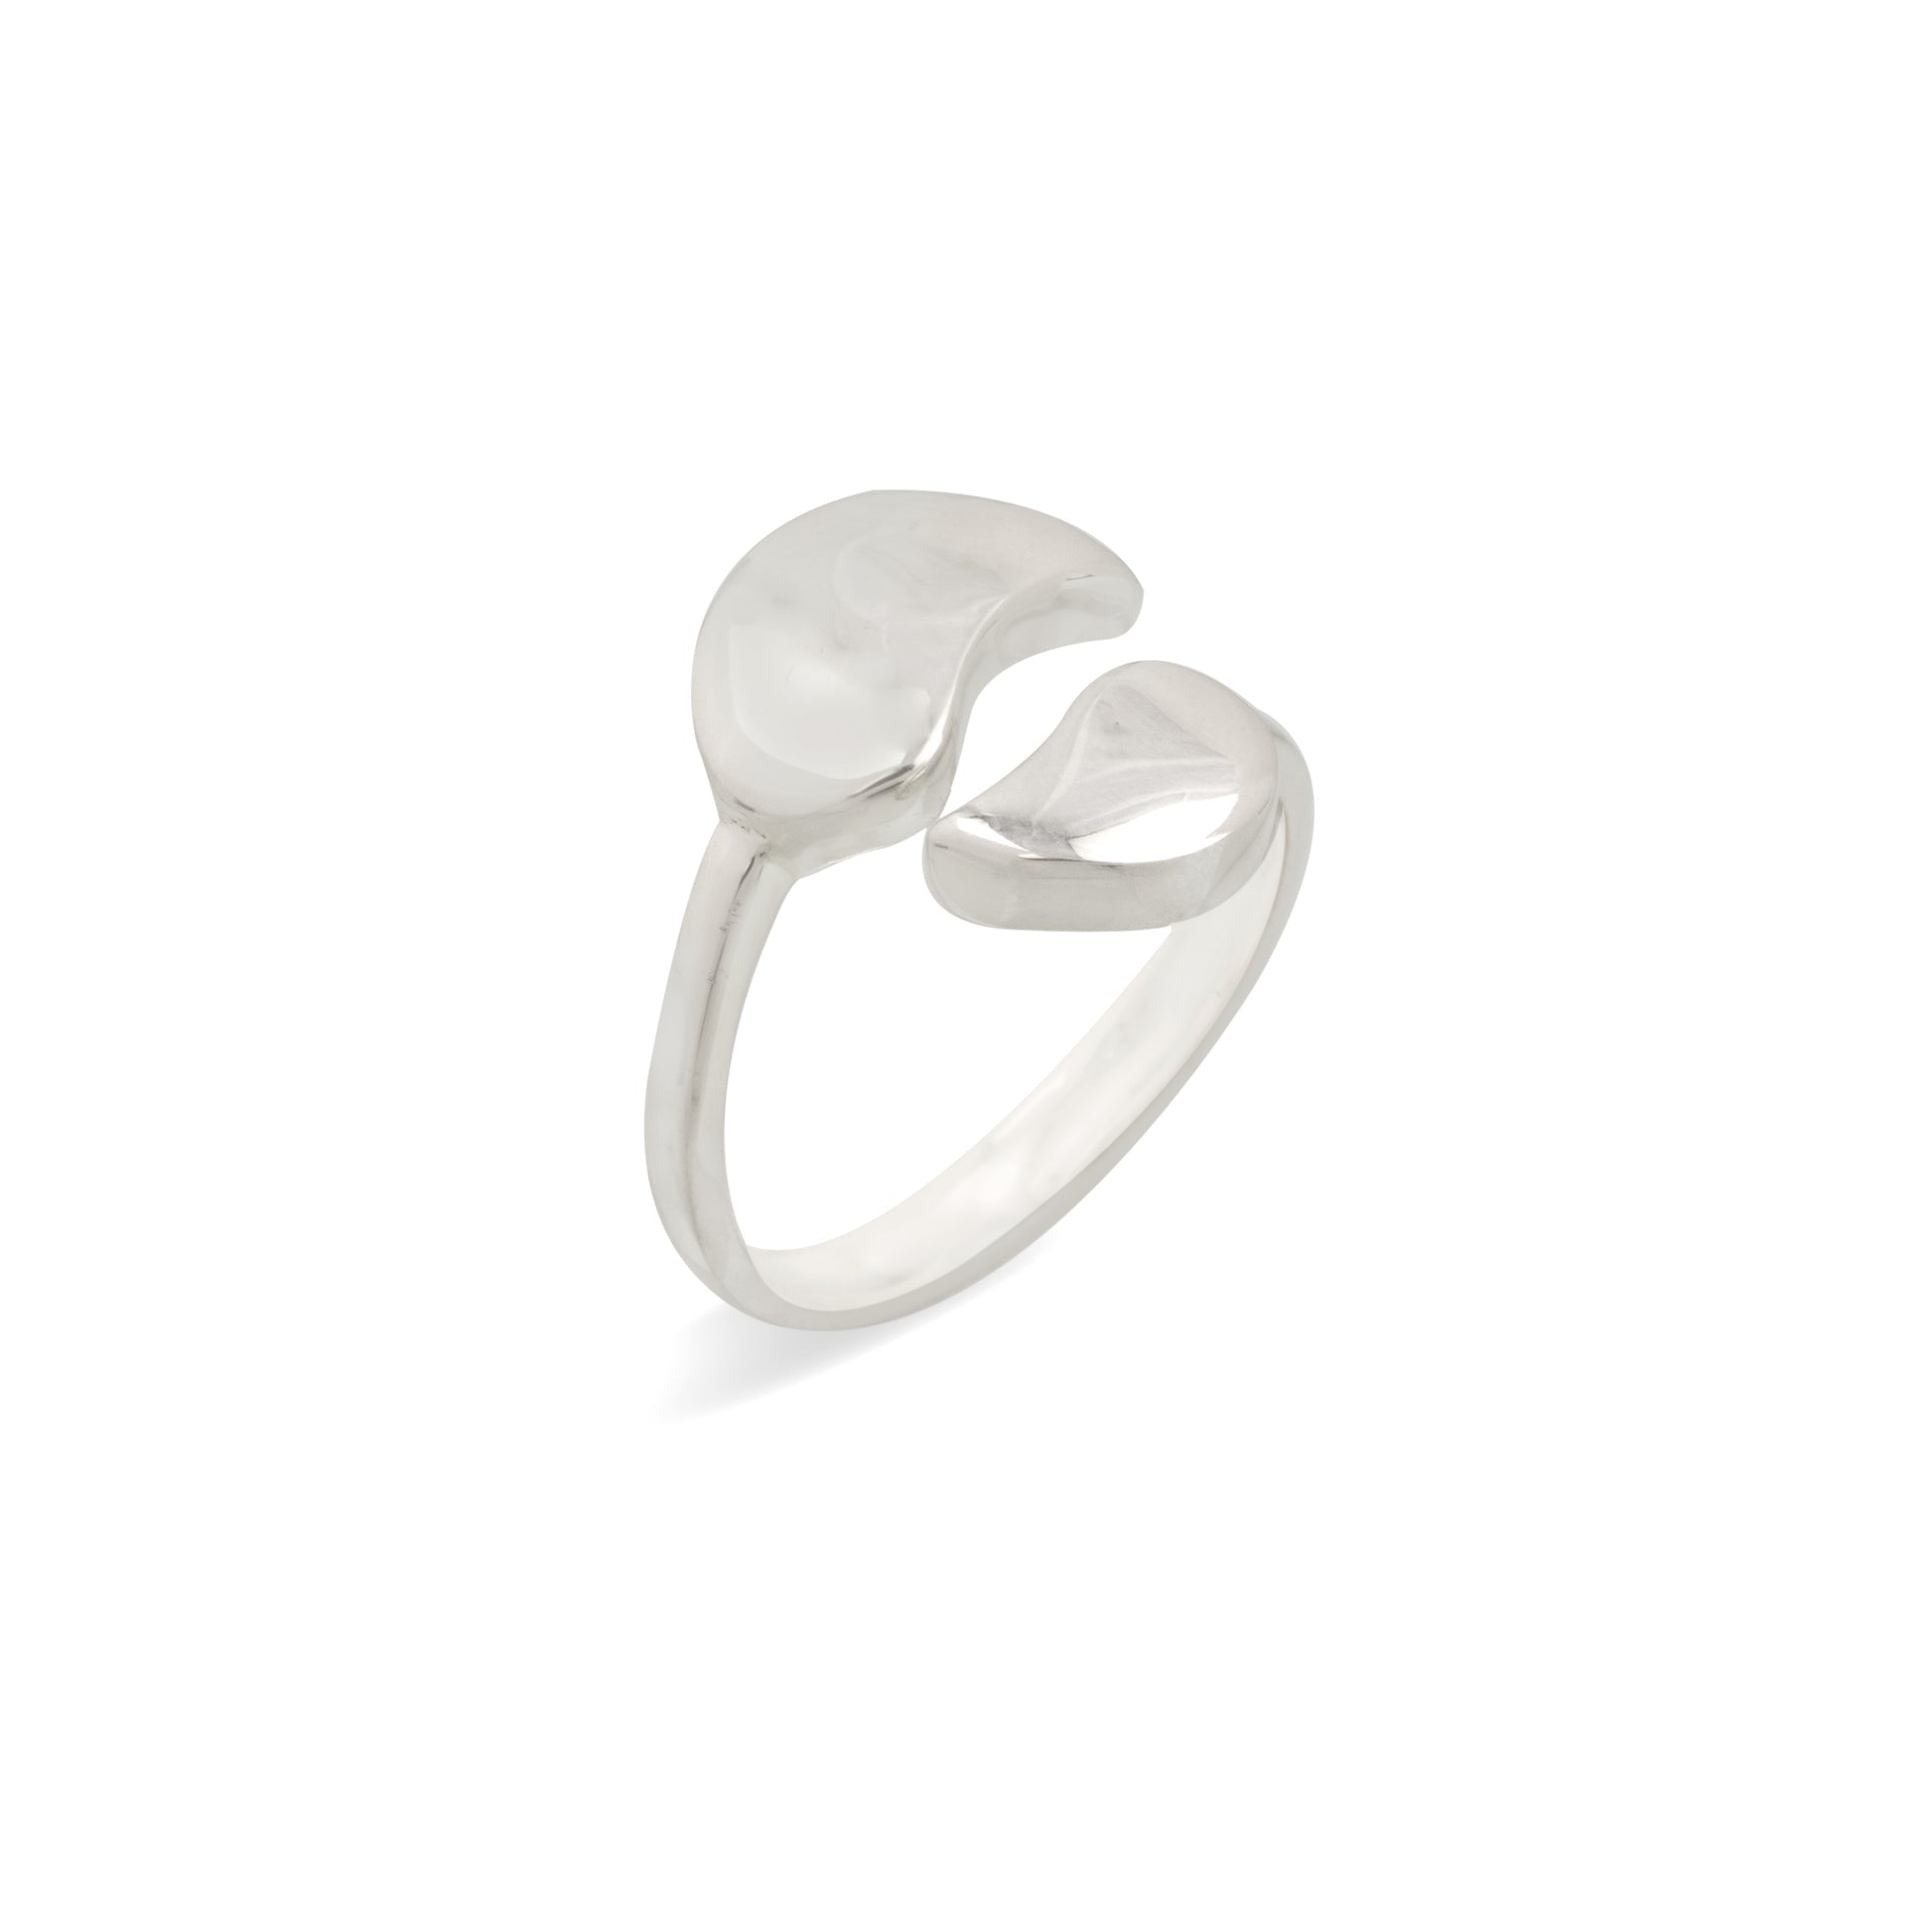 Designful- Uncut Silver Ring.